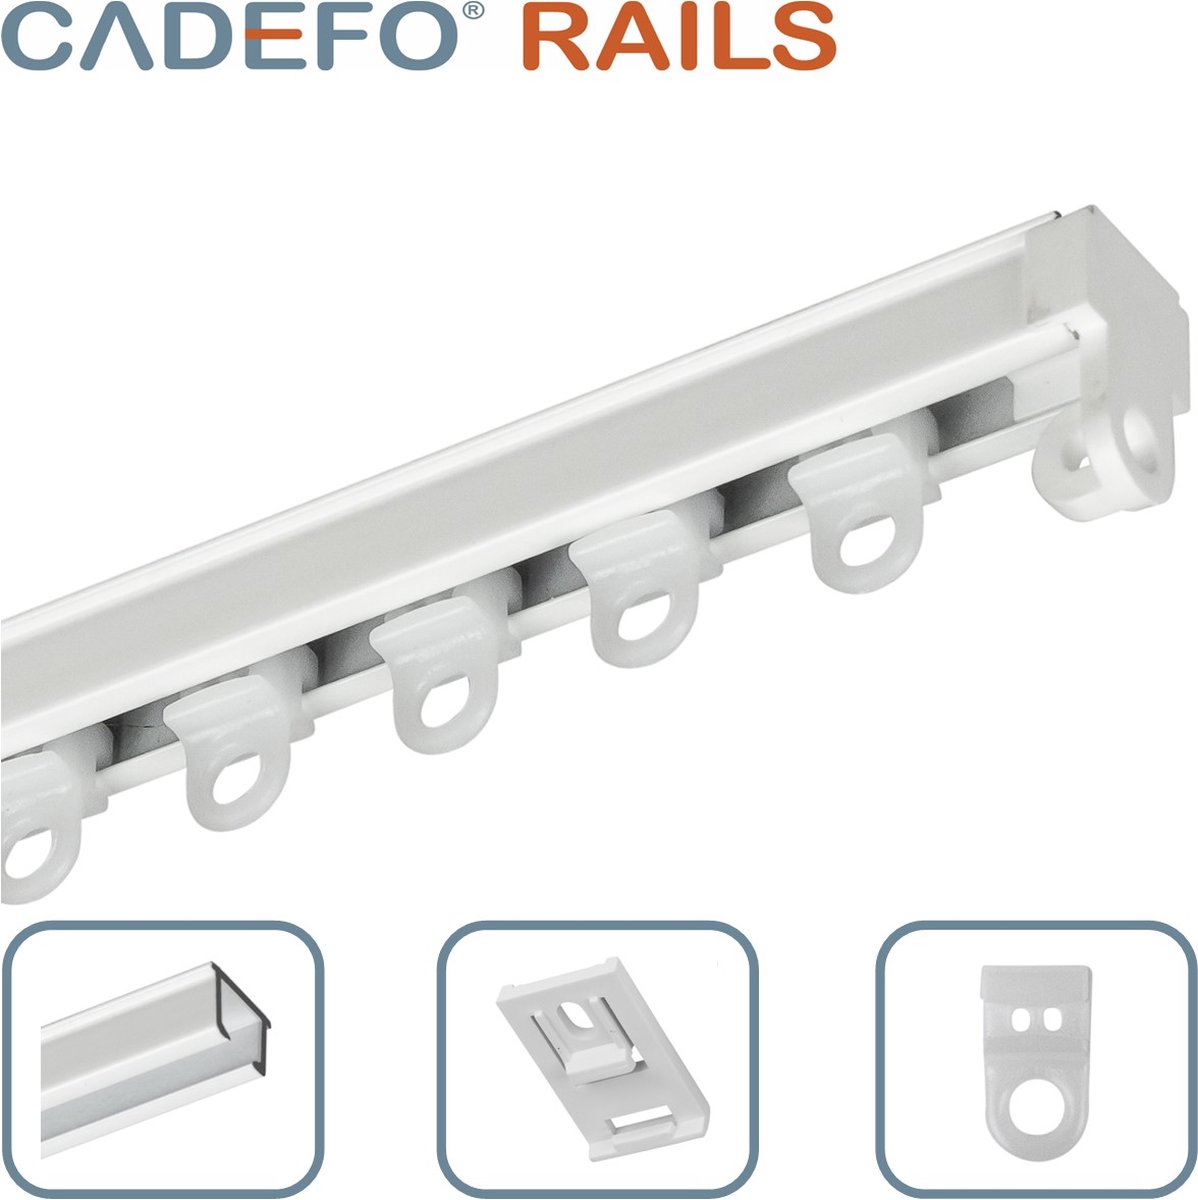 CADEFO RAILS (451 - 500 cm) Gordijnrails - Compleet op maat! - UIT 1 STUK - Leverbaar tot 6 meter - Plafondbevestiging - Lengte 495 cm